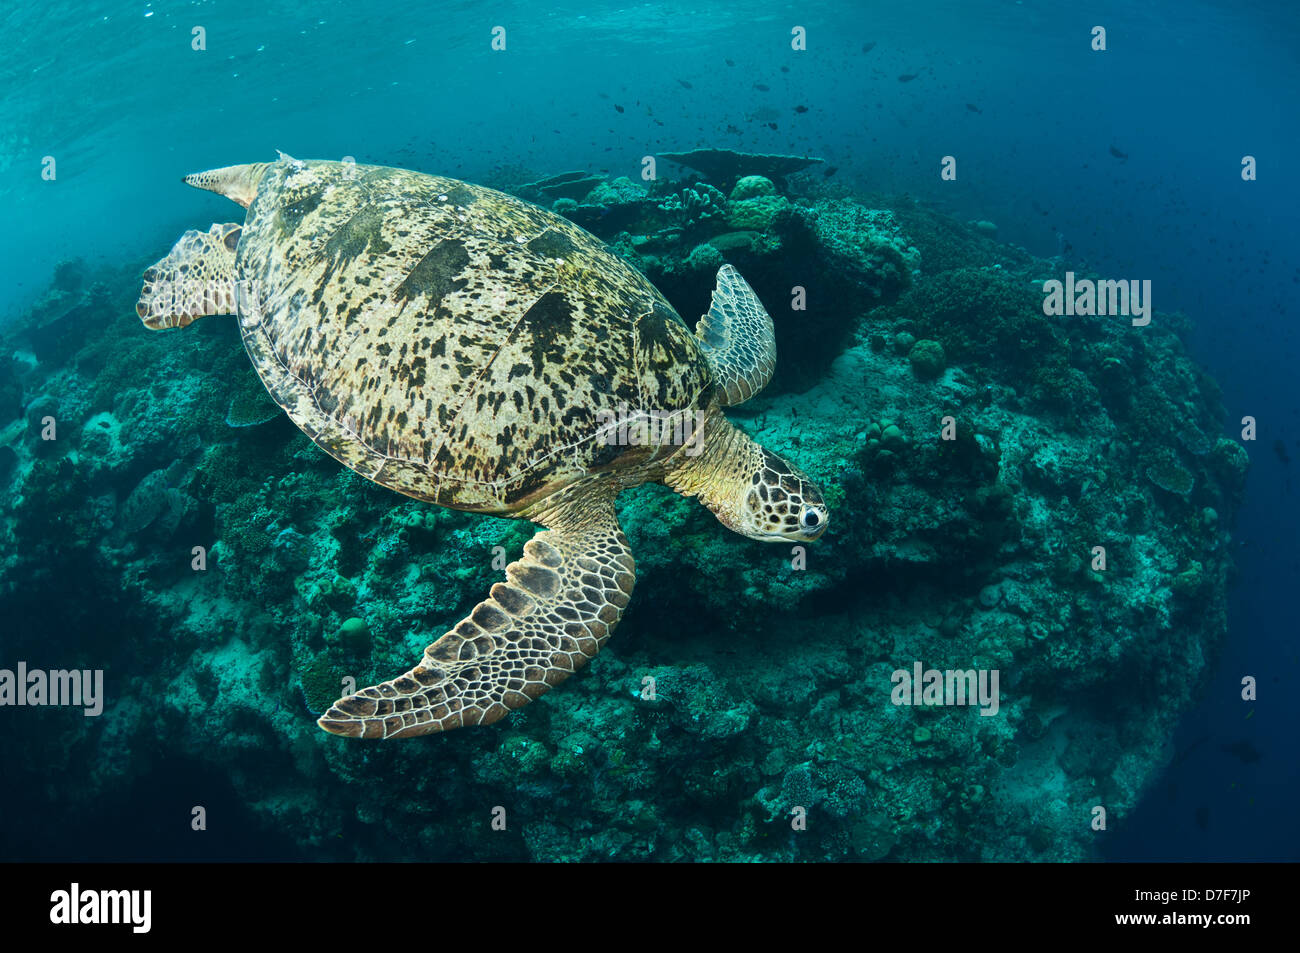 Green turtle swimming above a reef, Pulau Sipadan, Sabah, Malaysia. Stock Photo